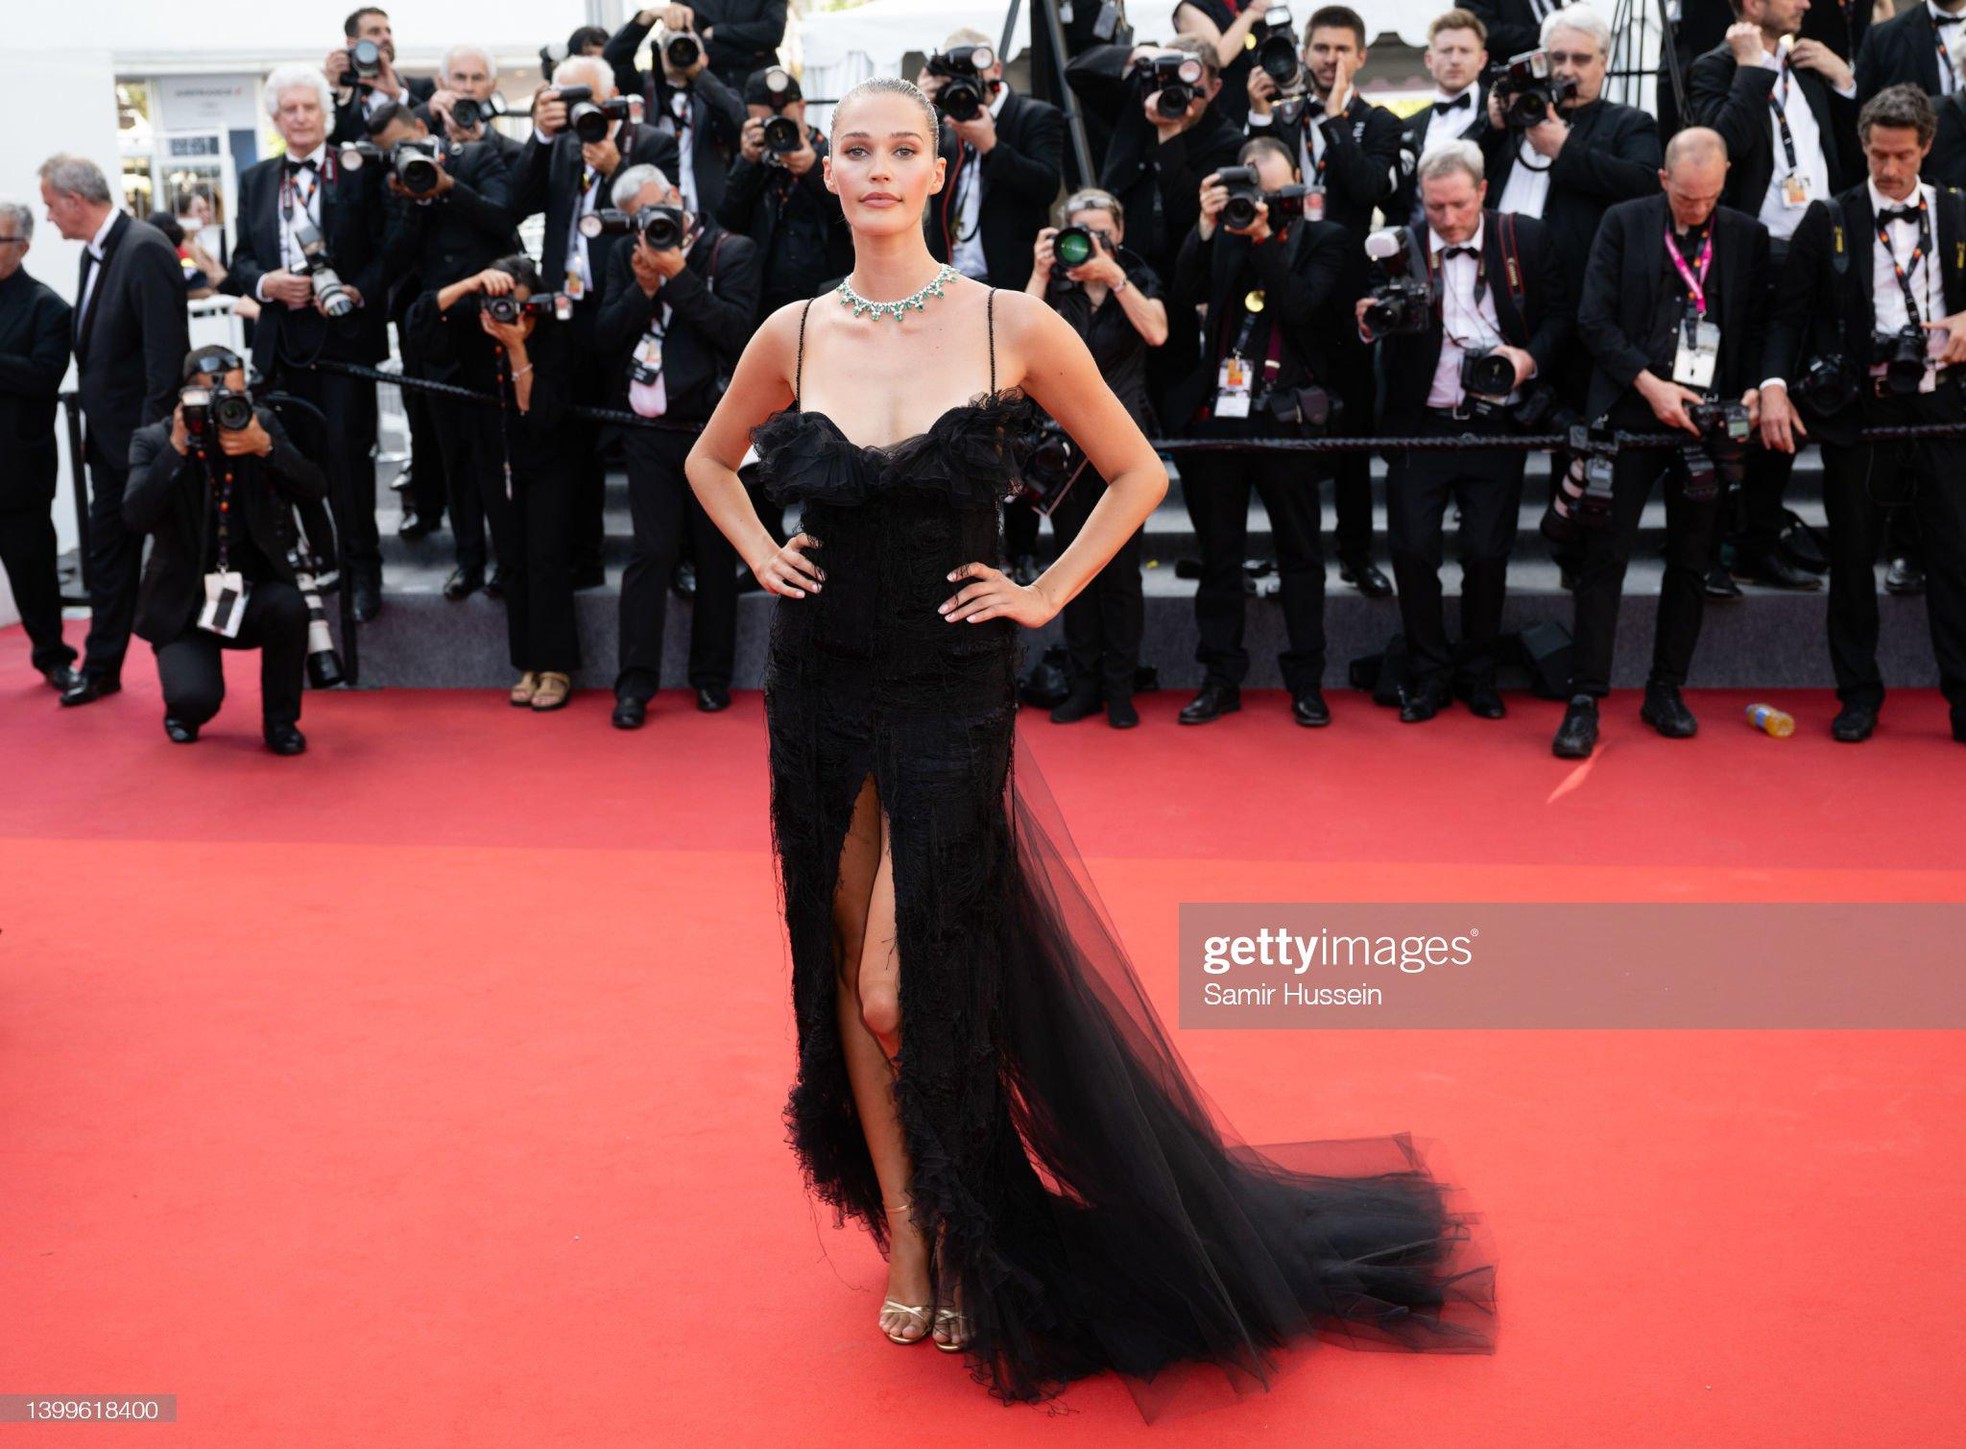 Cannes ngày 11: Hai minh tinh gạo cội khiêu vũ trên thảm đỏ, nữ ca sĩ lộ nội y phản cảm - Ảnh 9.